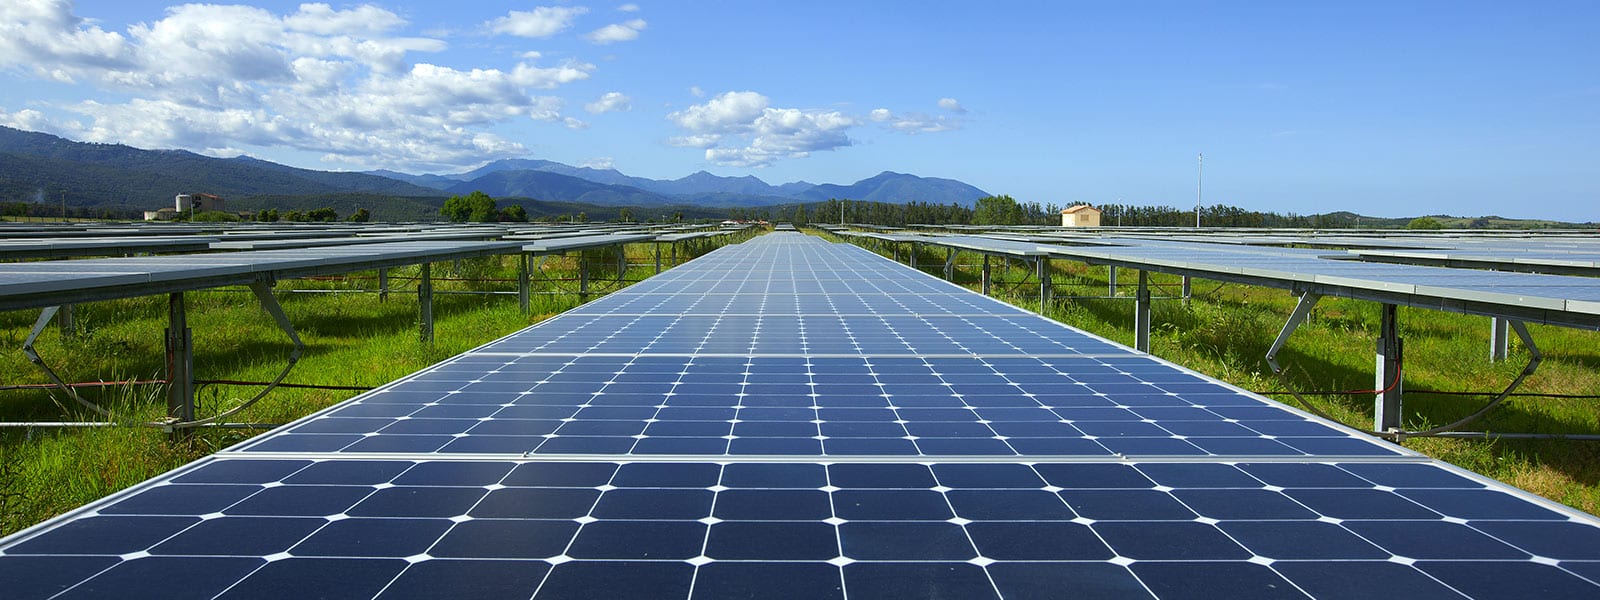 Nouvelles du soleil en Dordogne : construction de la centrale solaire photovoltaïque de Milhac